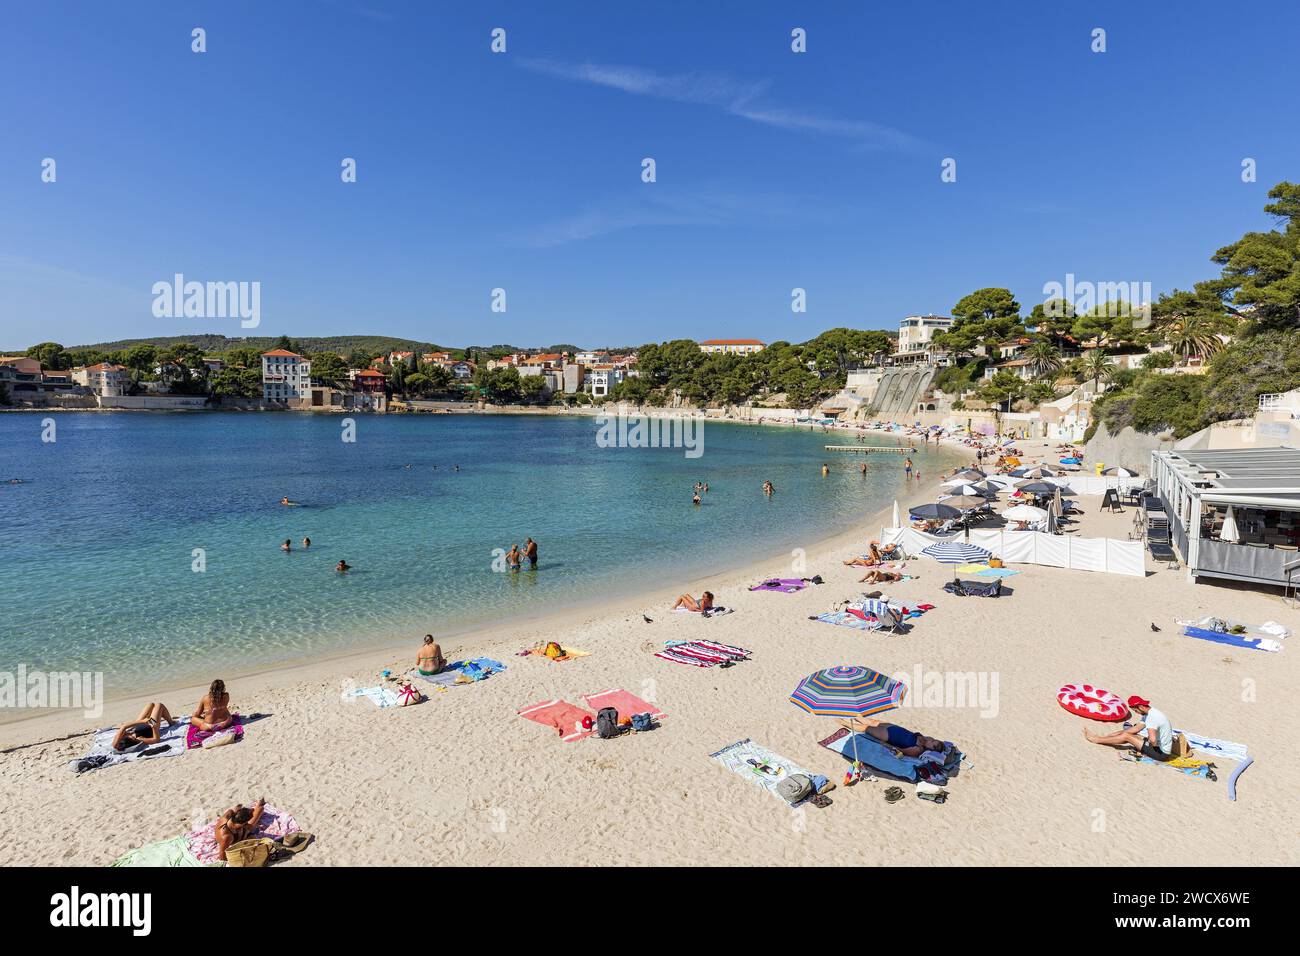 France, Var, Bandol, Renecros beach Stock Photo